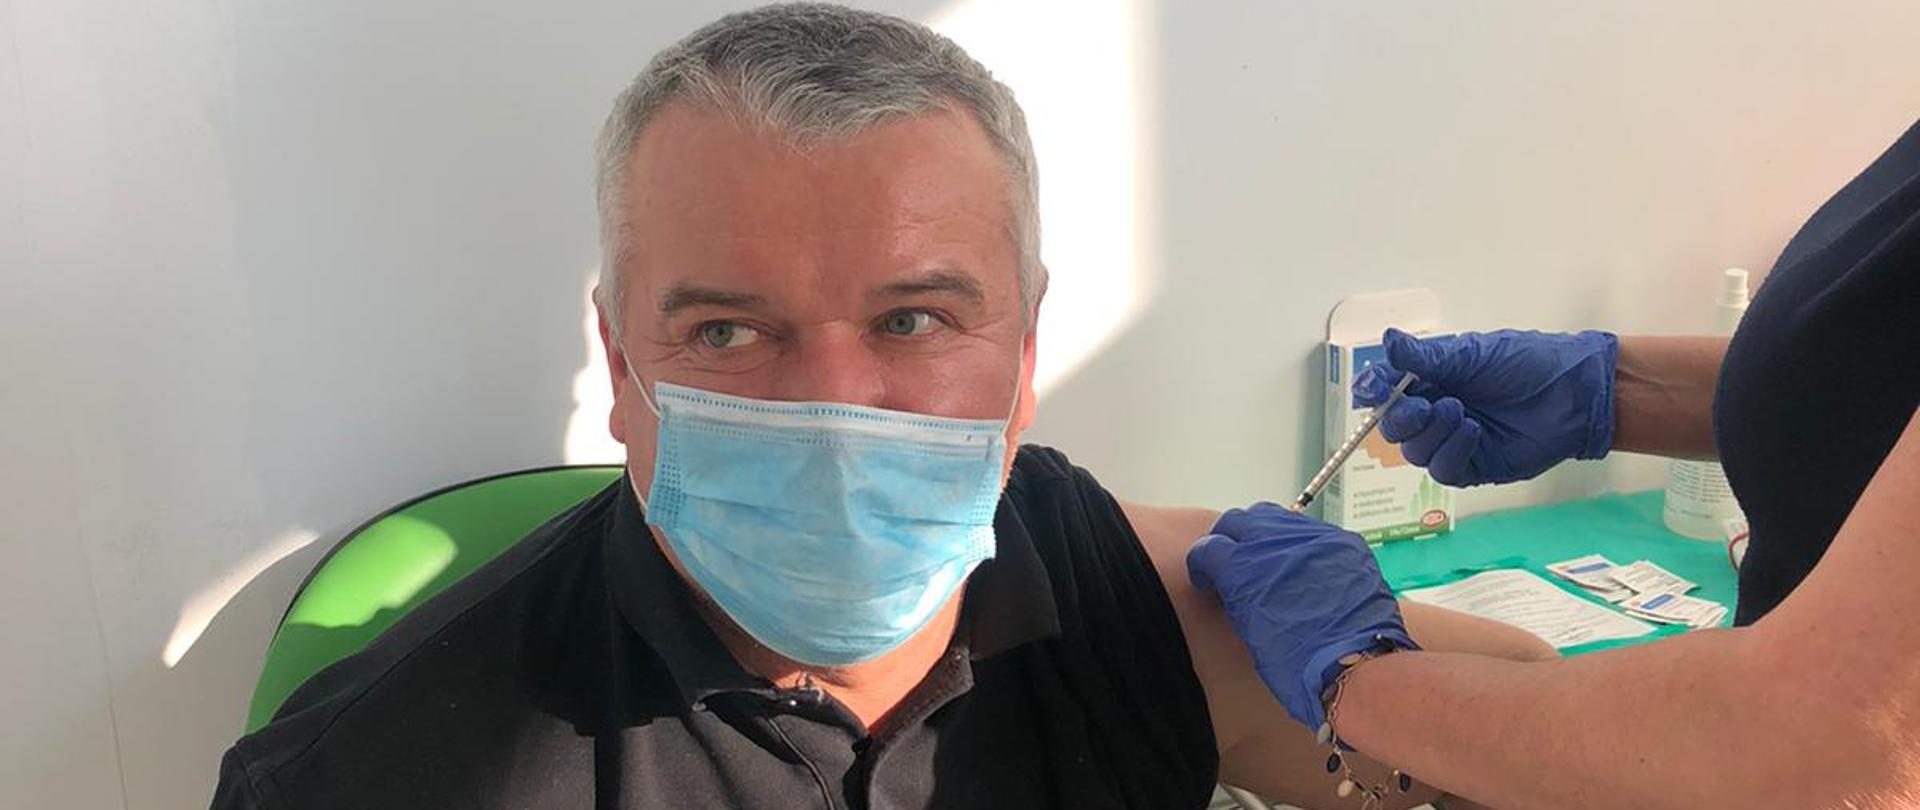 Zdjęcie przedstawia funkcjonariusza PSP (dowódca JRG) oraz personel medyczny podający szczepionkę przeciwko COVID-19 . Zdjęcie wykonane w gabinecie punktu szczepień w Kaliszu w porze dziennej.